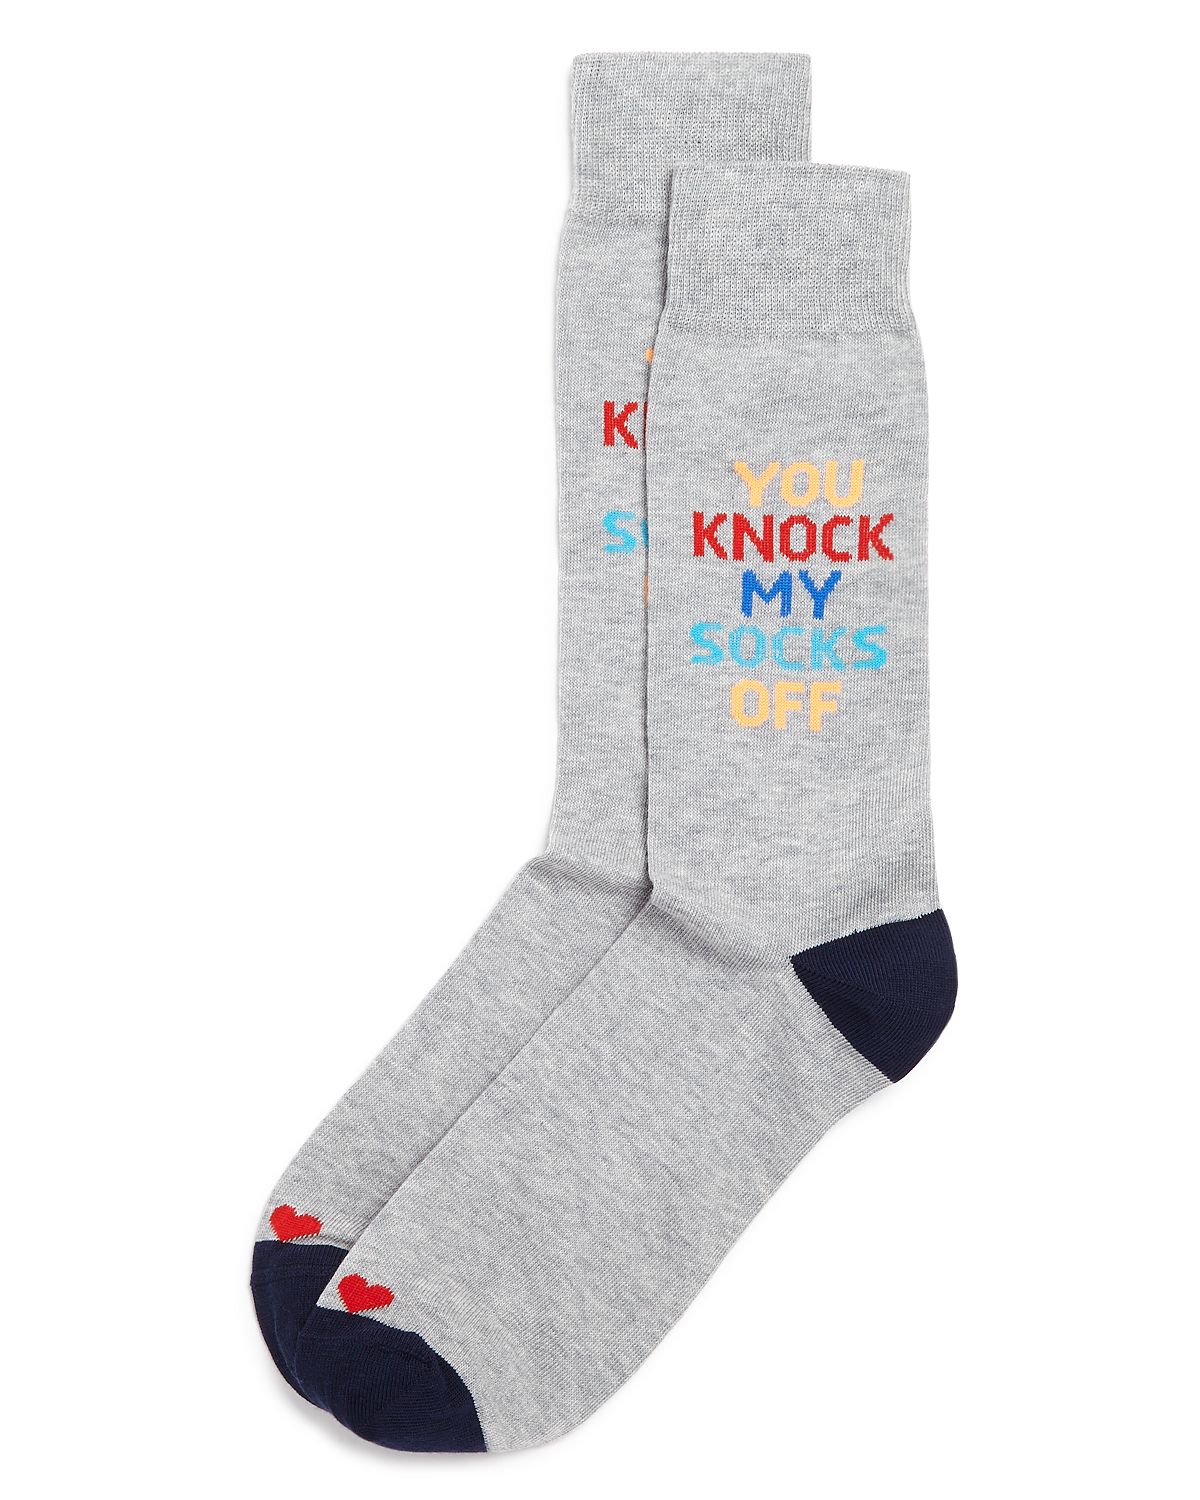 The Men's Store Knock Your Socks Off Socks Gray